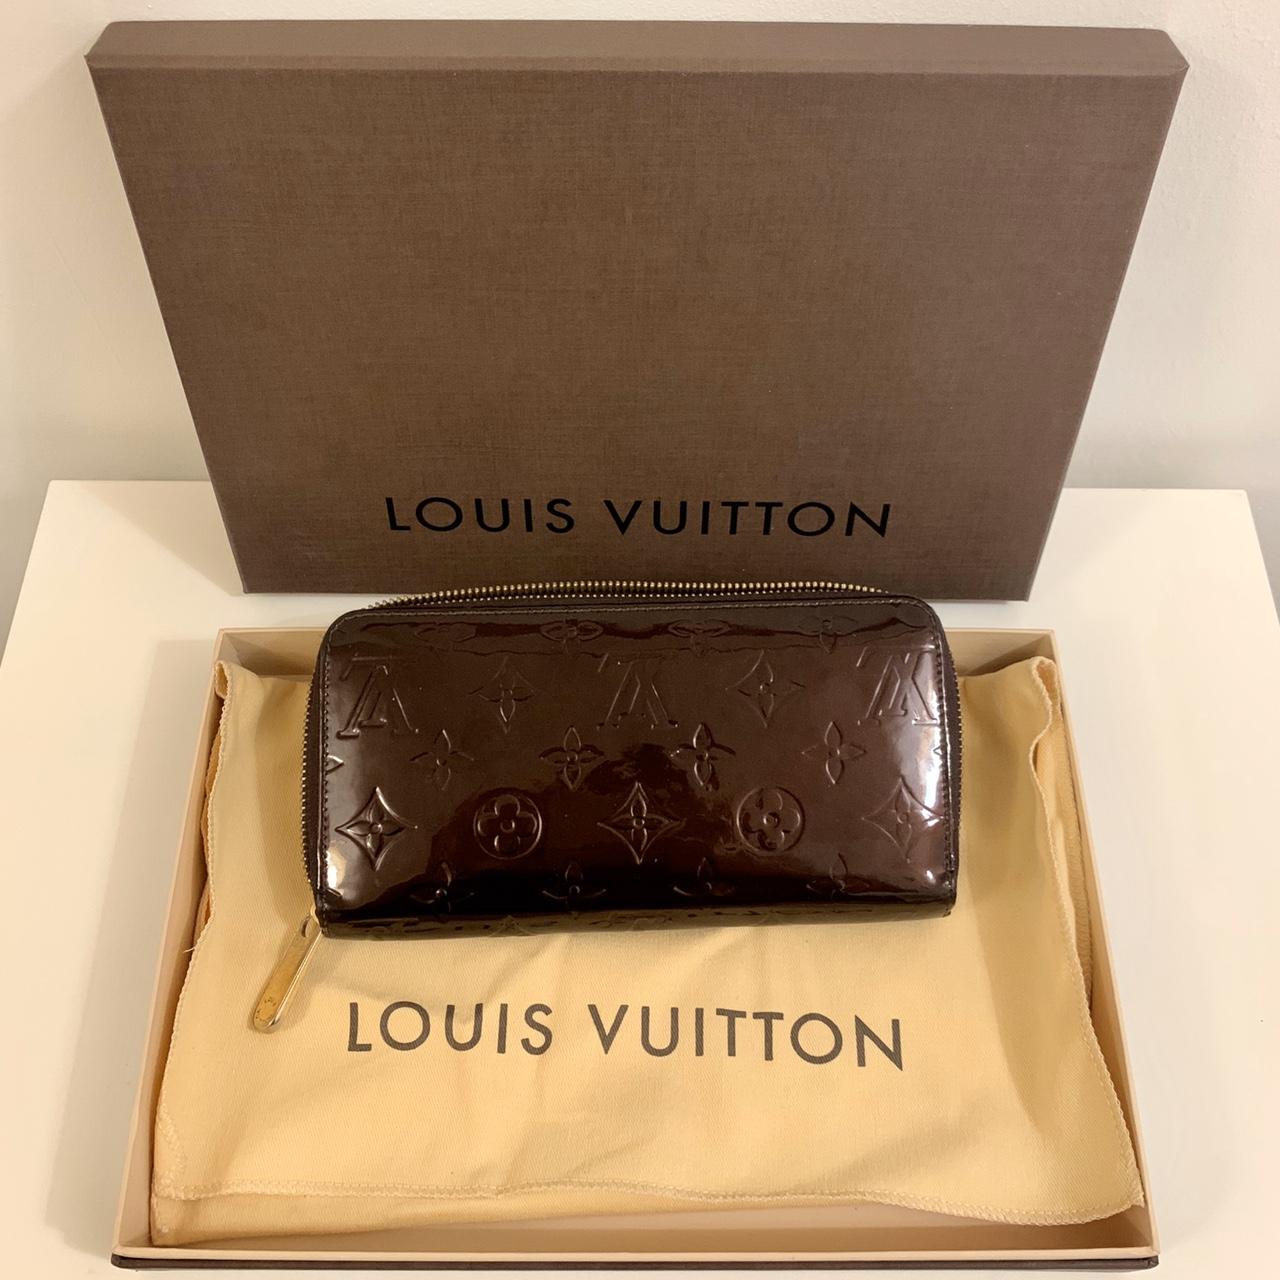 Cream Louis Vuitton Zippy Wallet In great - Depop